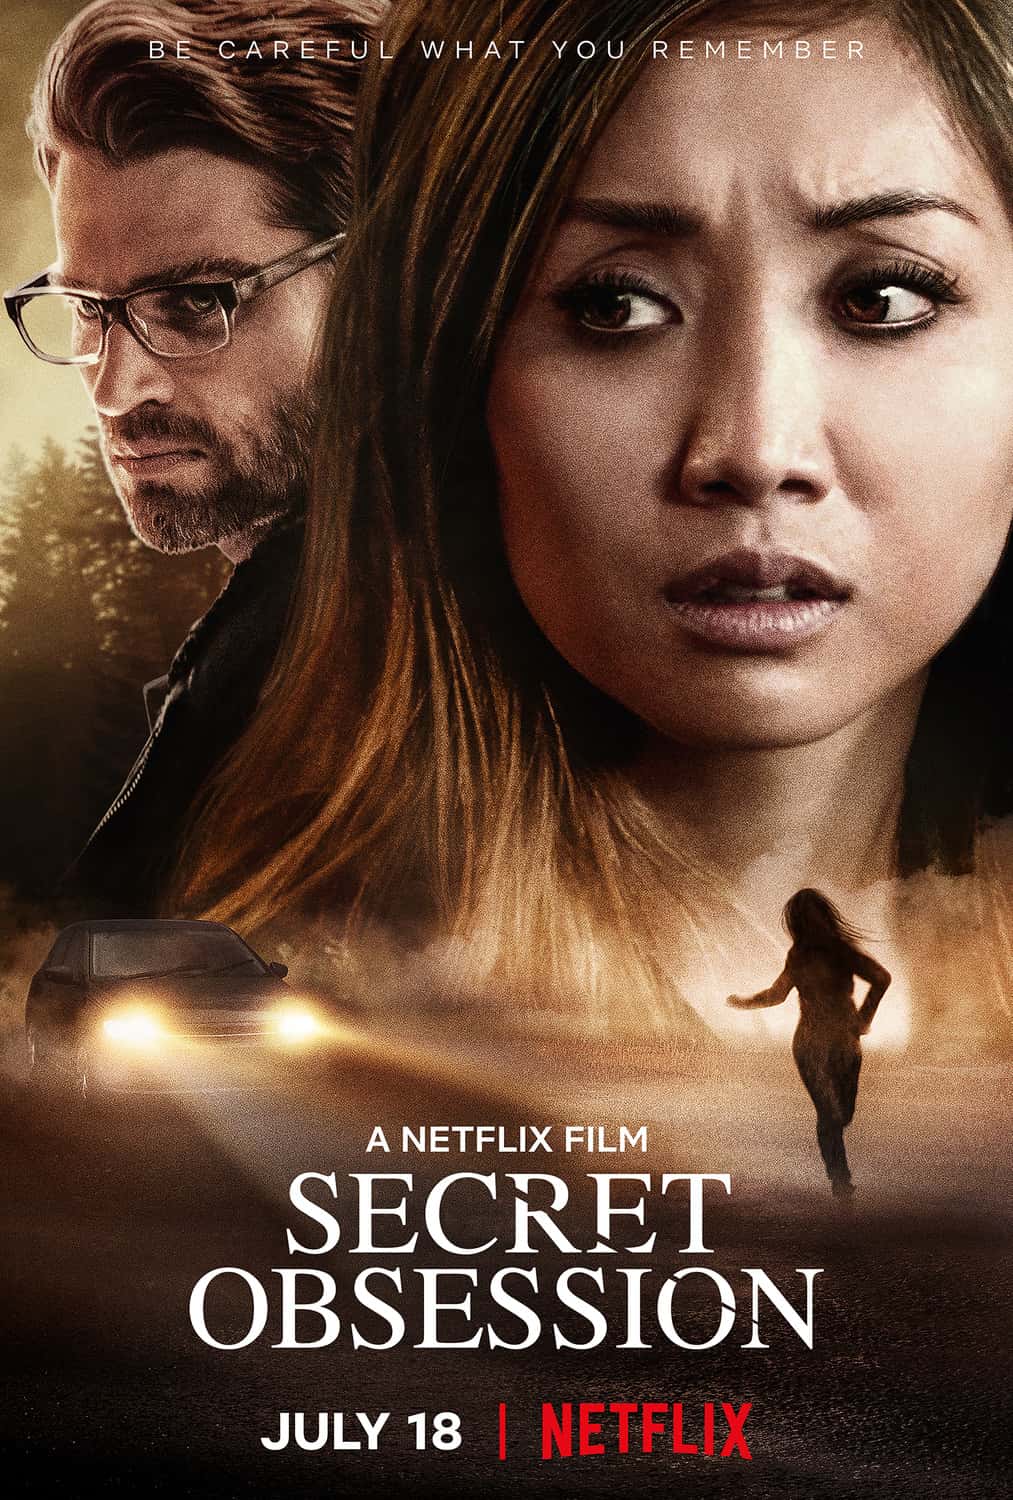 Secret Obsession (2019) แอบ จ้อง ฆ่า ซับไทย